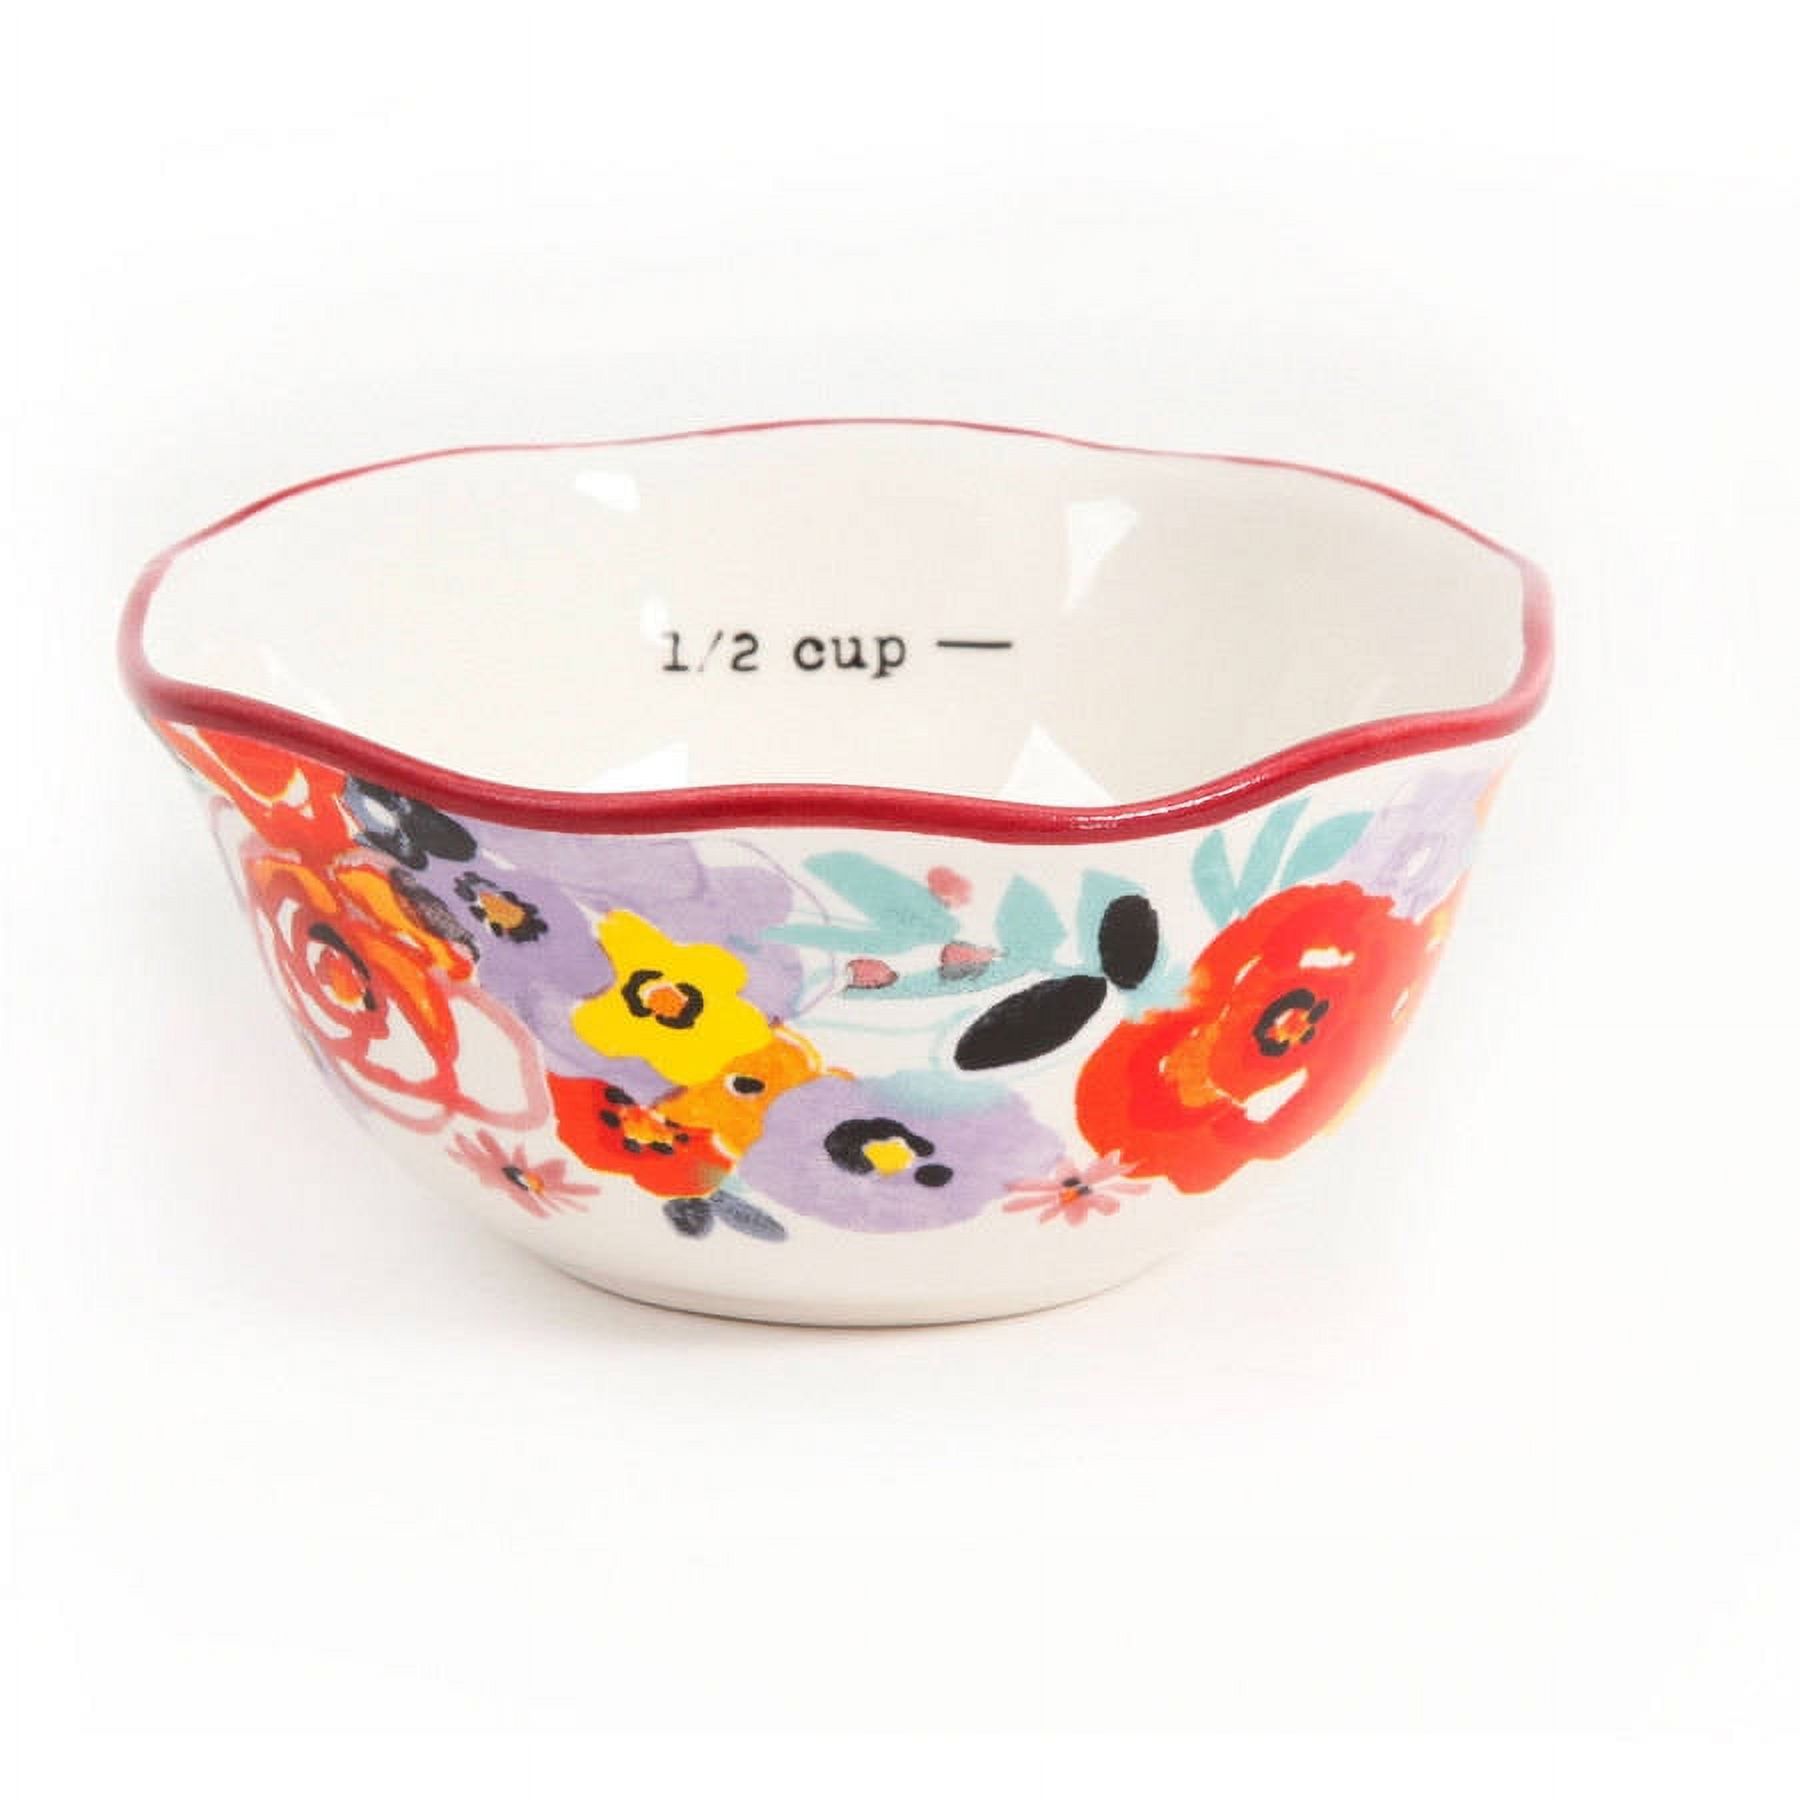 The Pioneer Woman Flea Market 5-Piece Ceramic Prep Set, Measuring Bowls & Cup - image 3 of 7